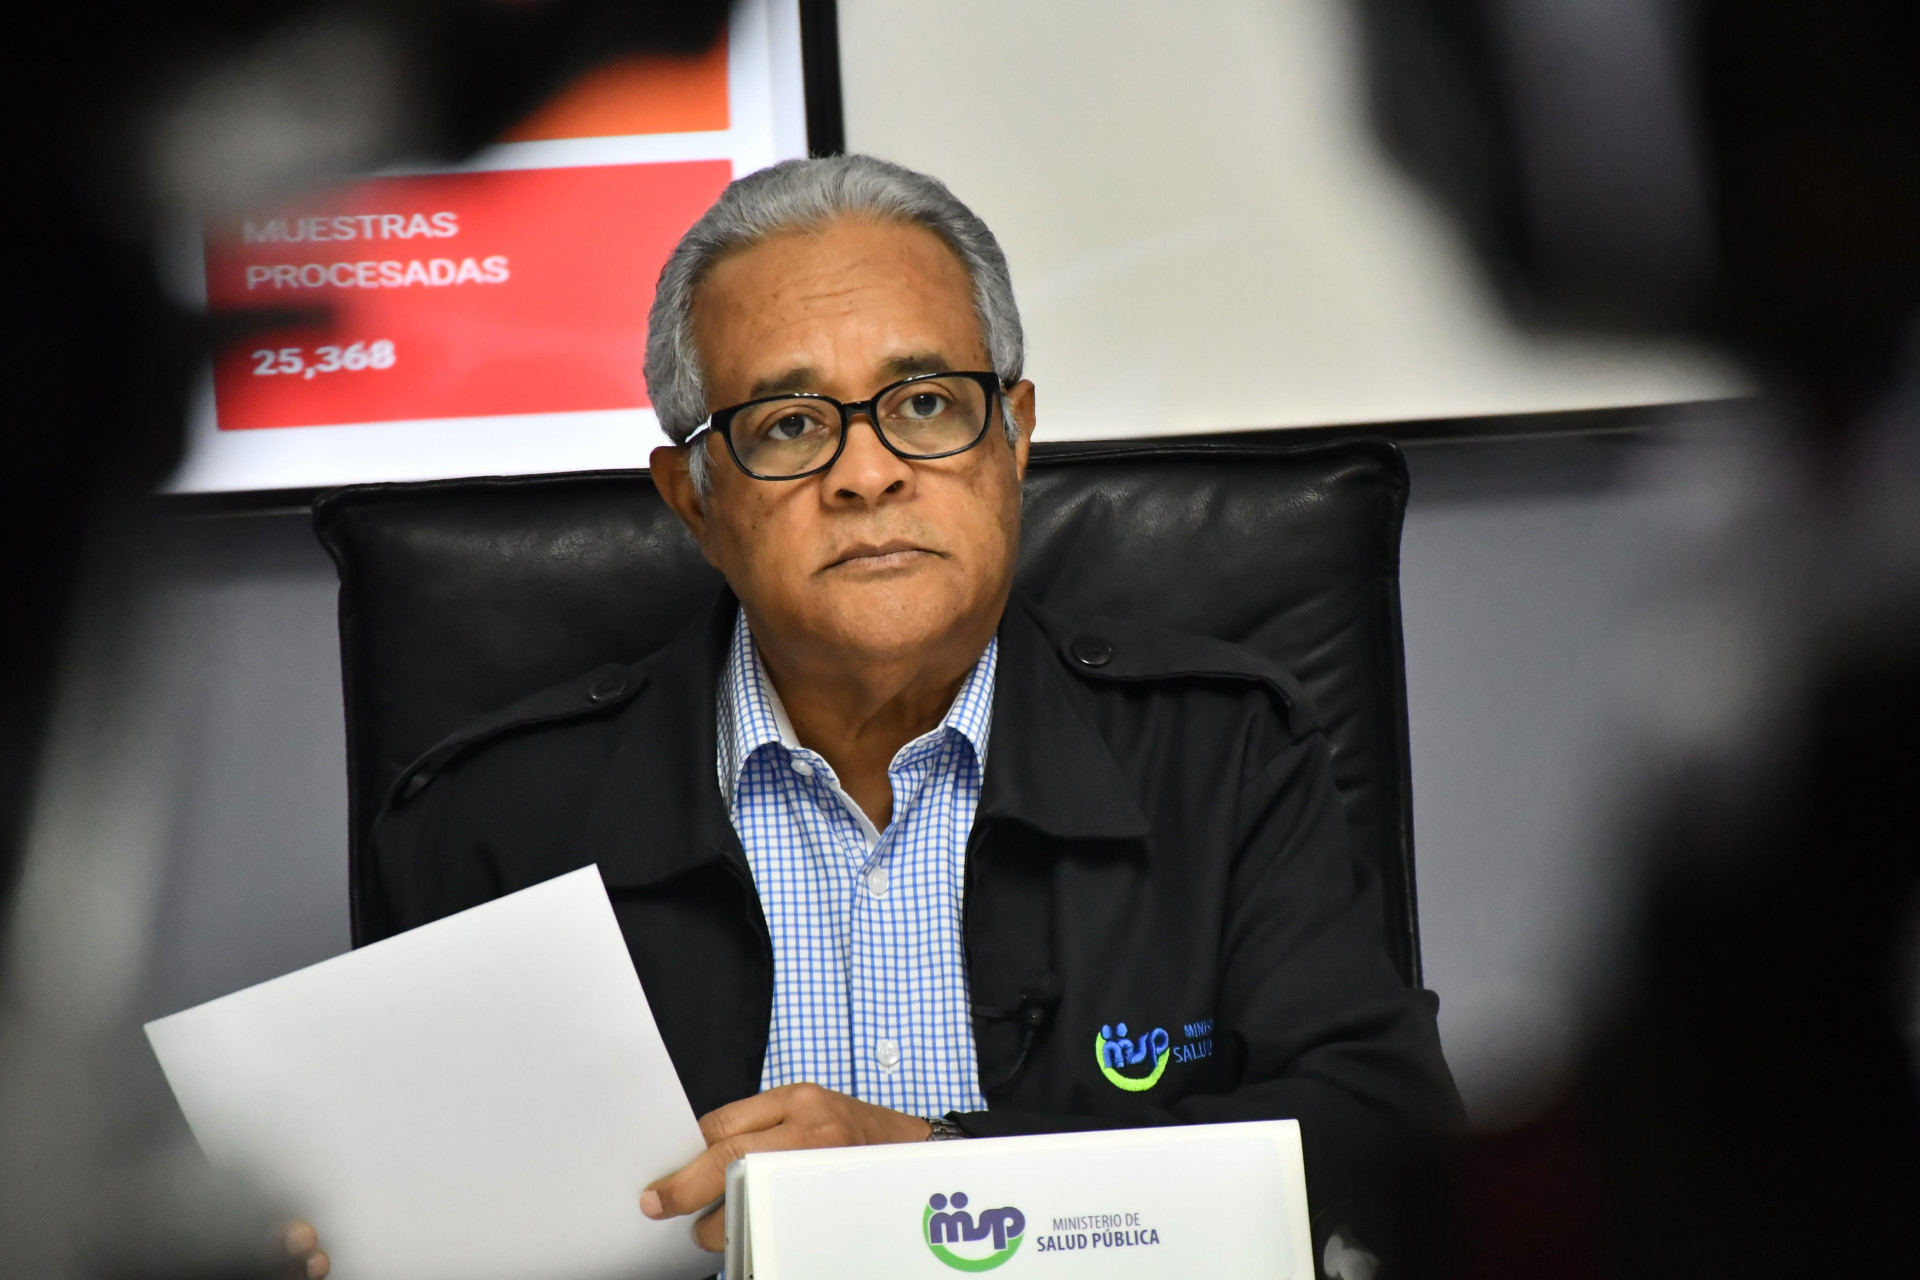 REPÚBLICA DOMINICANA: Ministerio de Salud continúa intervención sanitaria en Puerto Plata; aislamiento social y búsqueda de casos, entre principales medidas